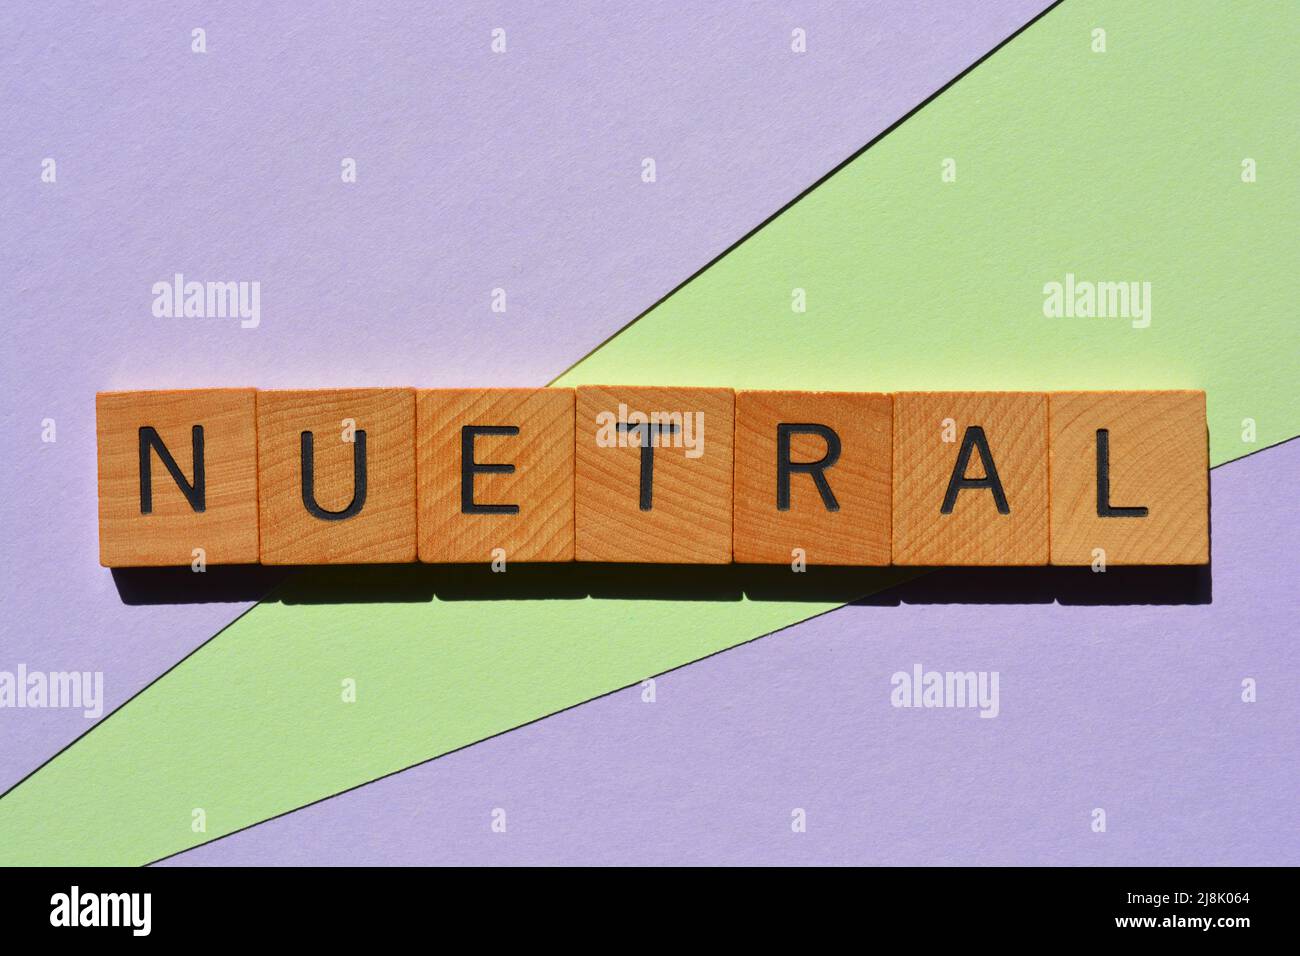 Neutral, palabra en letras del alfabeto de madera aisladas sobre fondo de color pastel Foto de stock